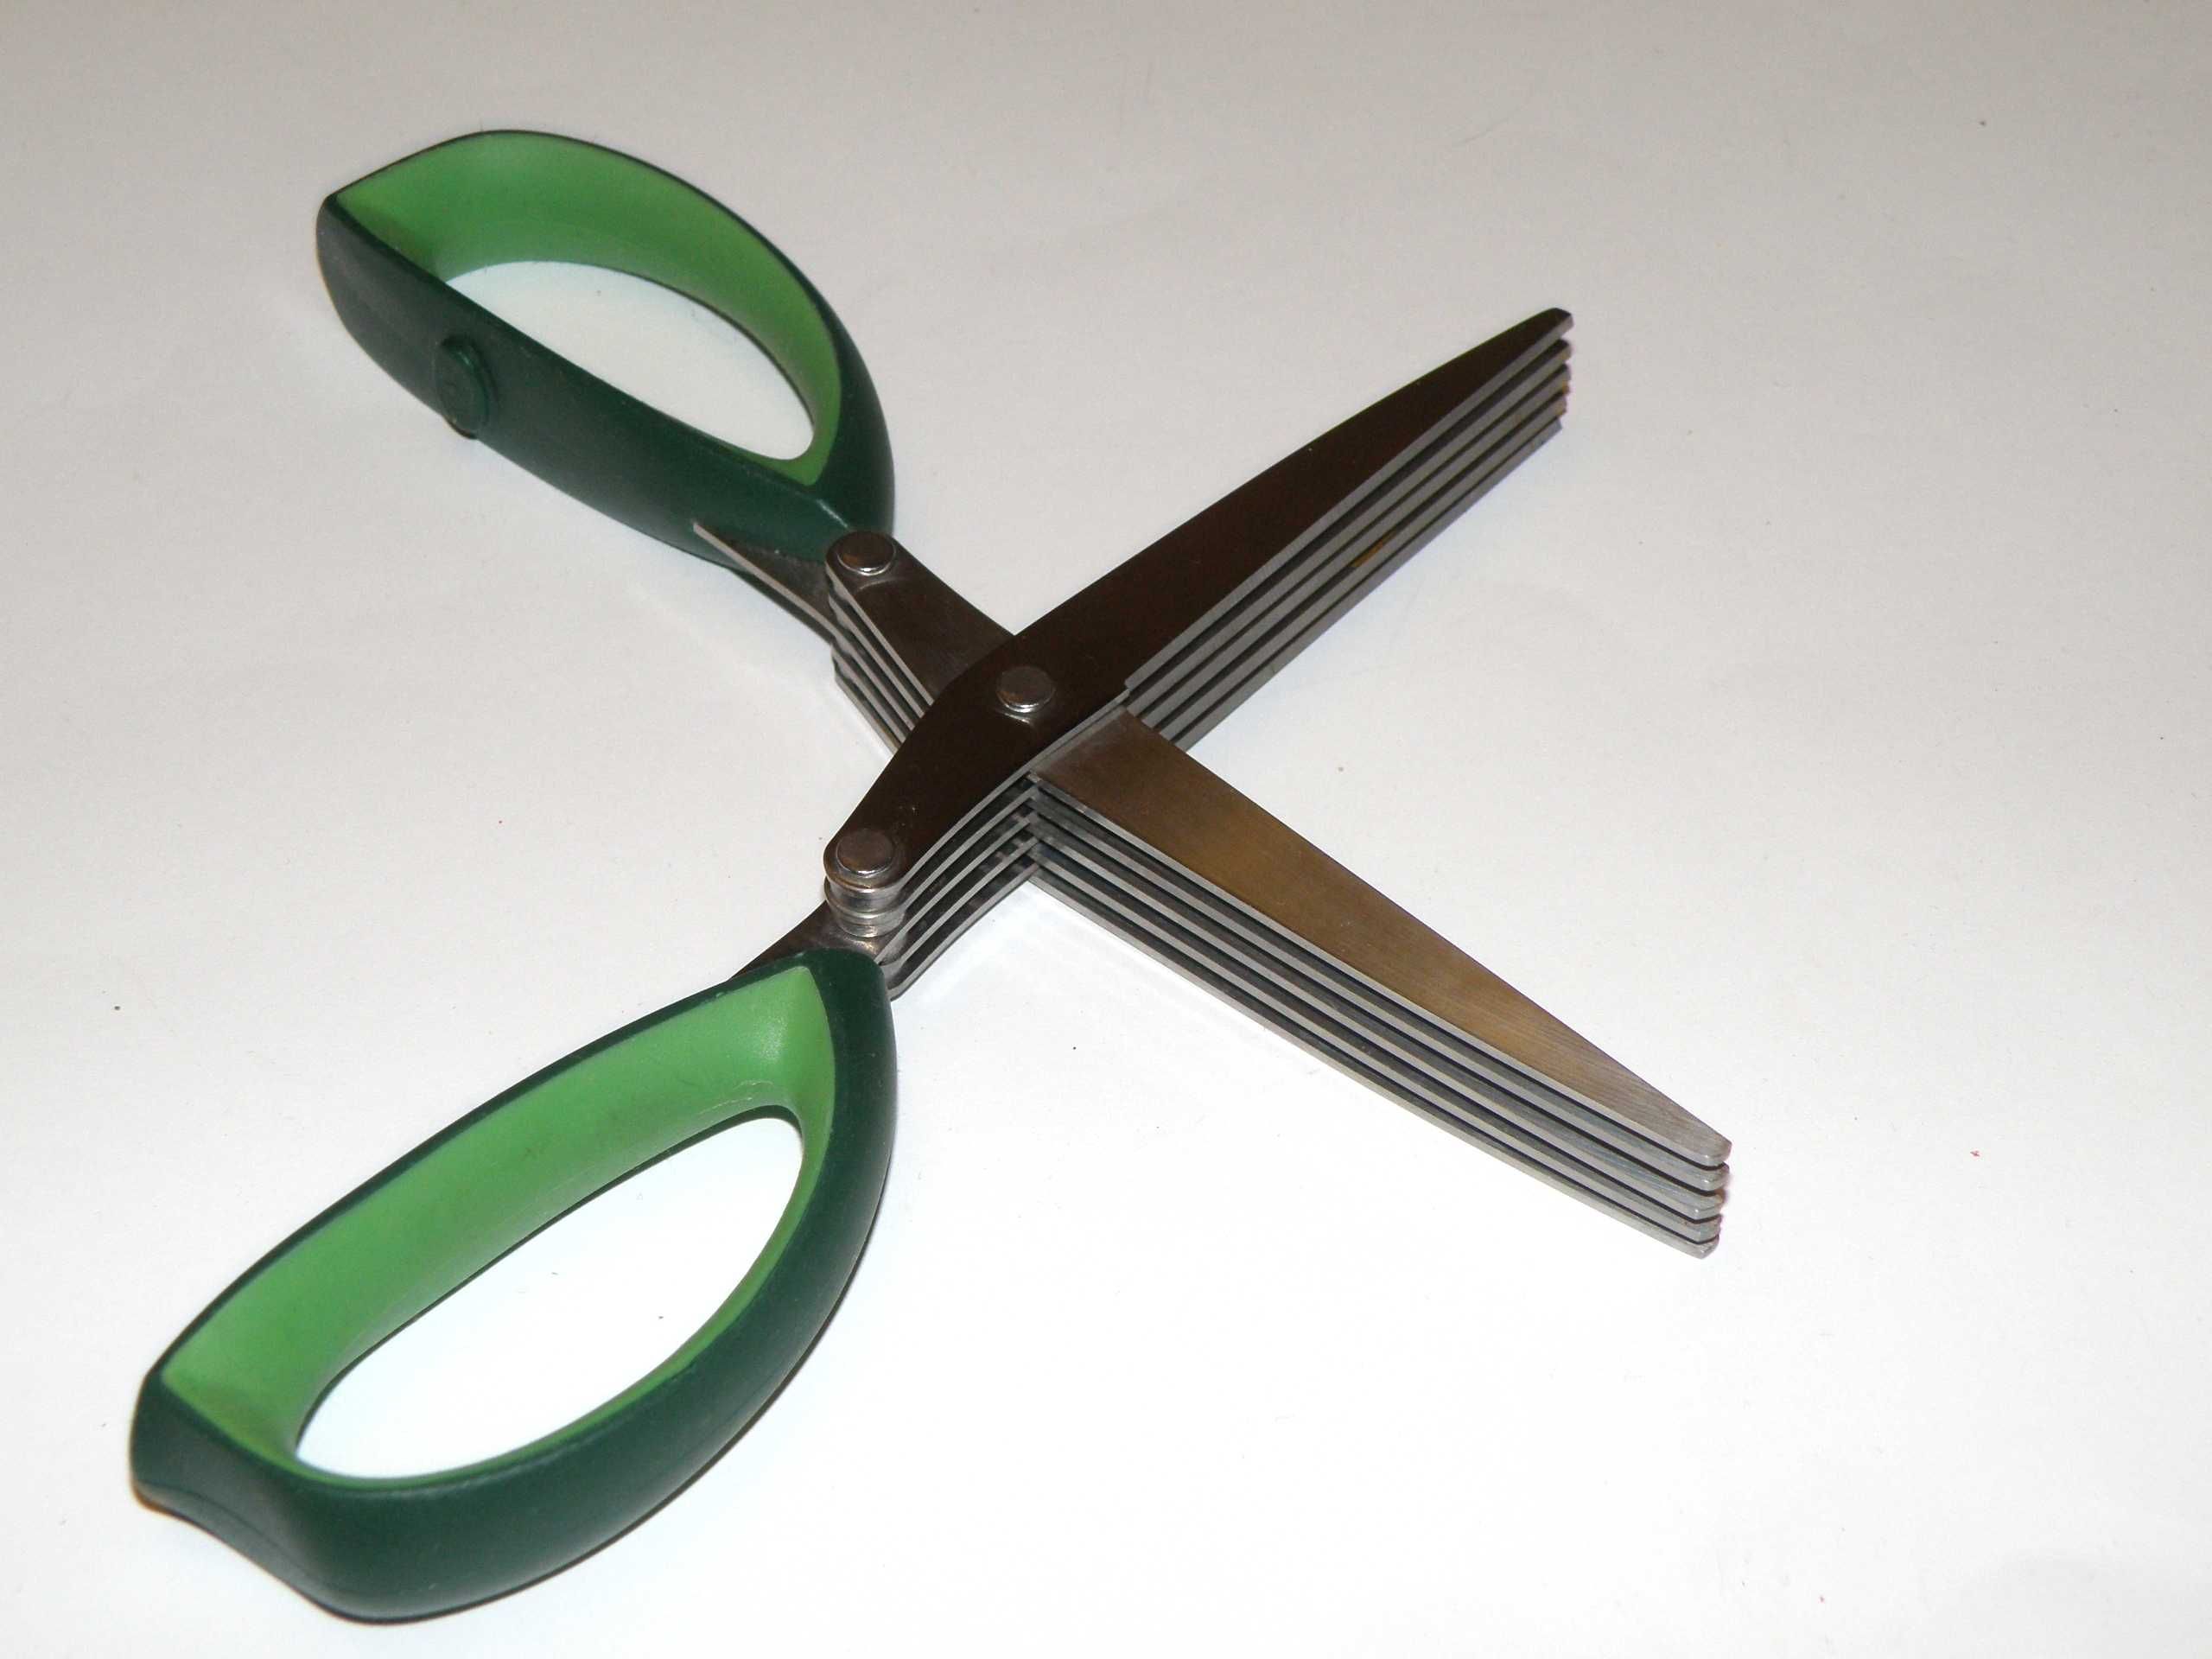 Ножницы для зелени 5 лезвий